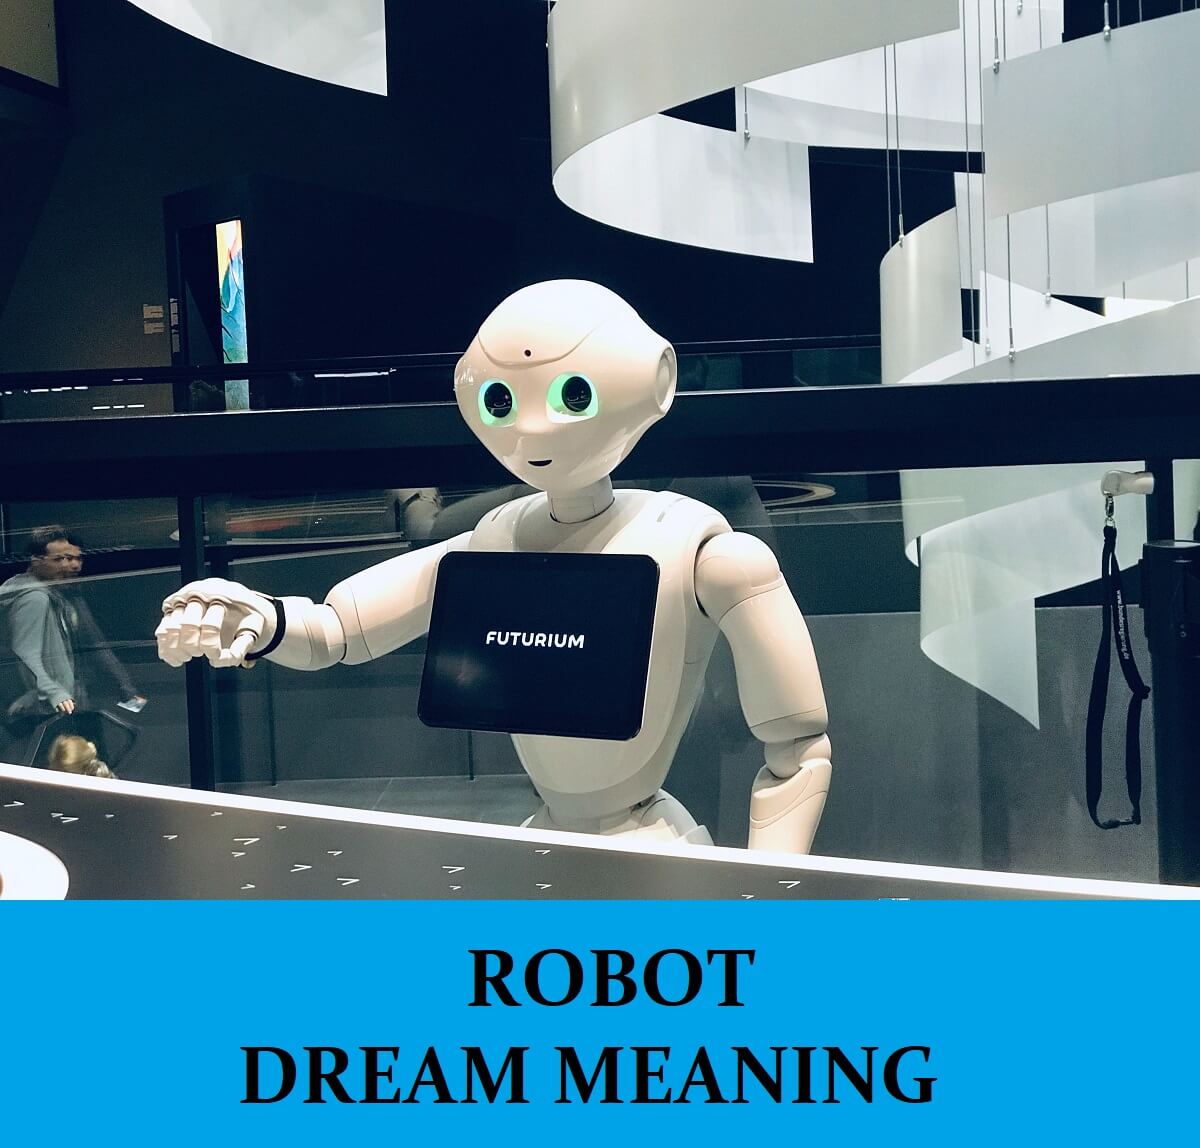 Dream About Robots